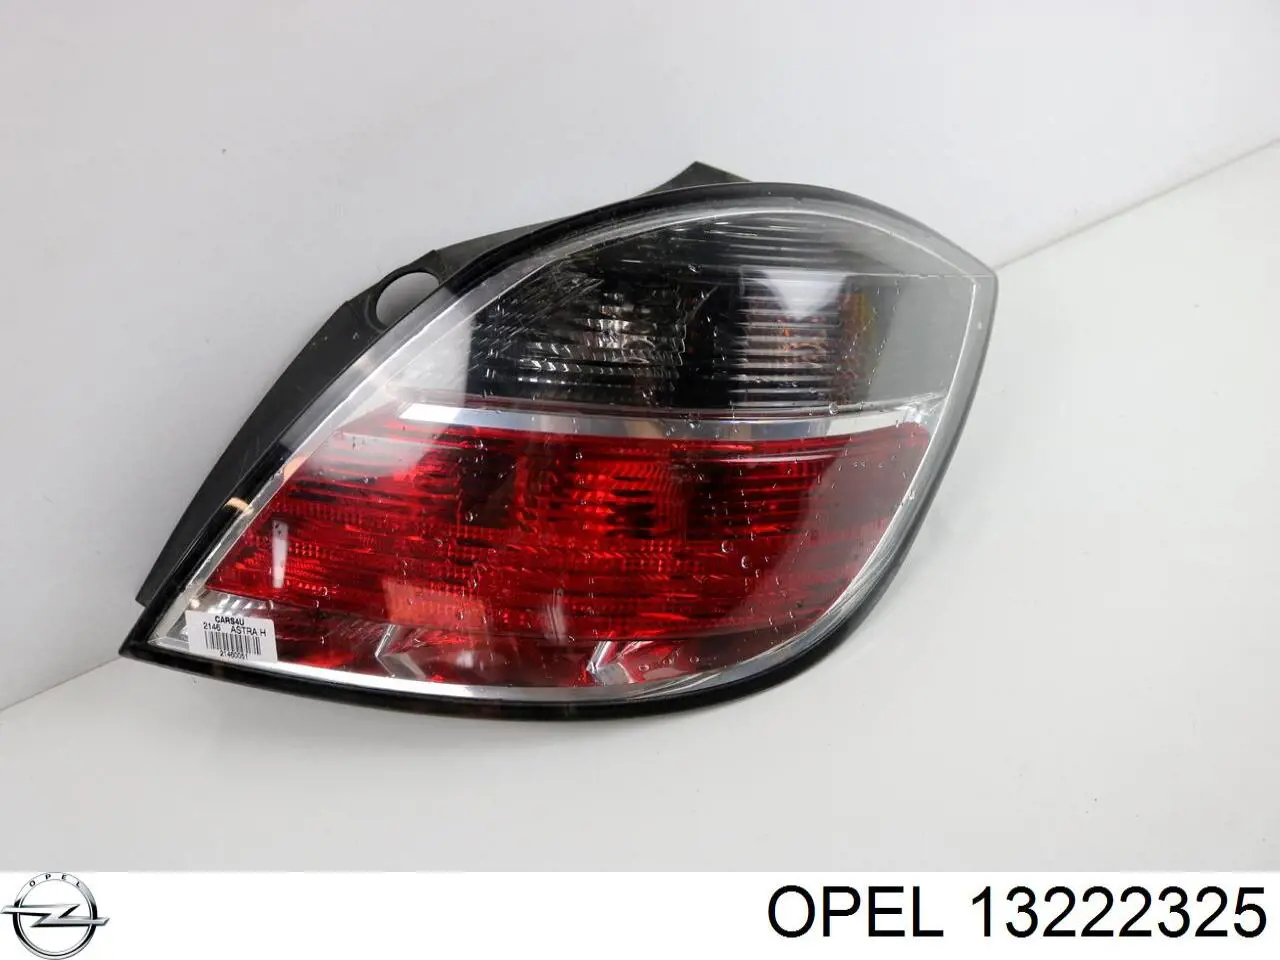 13222325 Opel фонарь задний правый